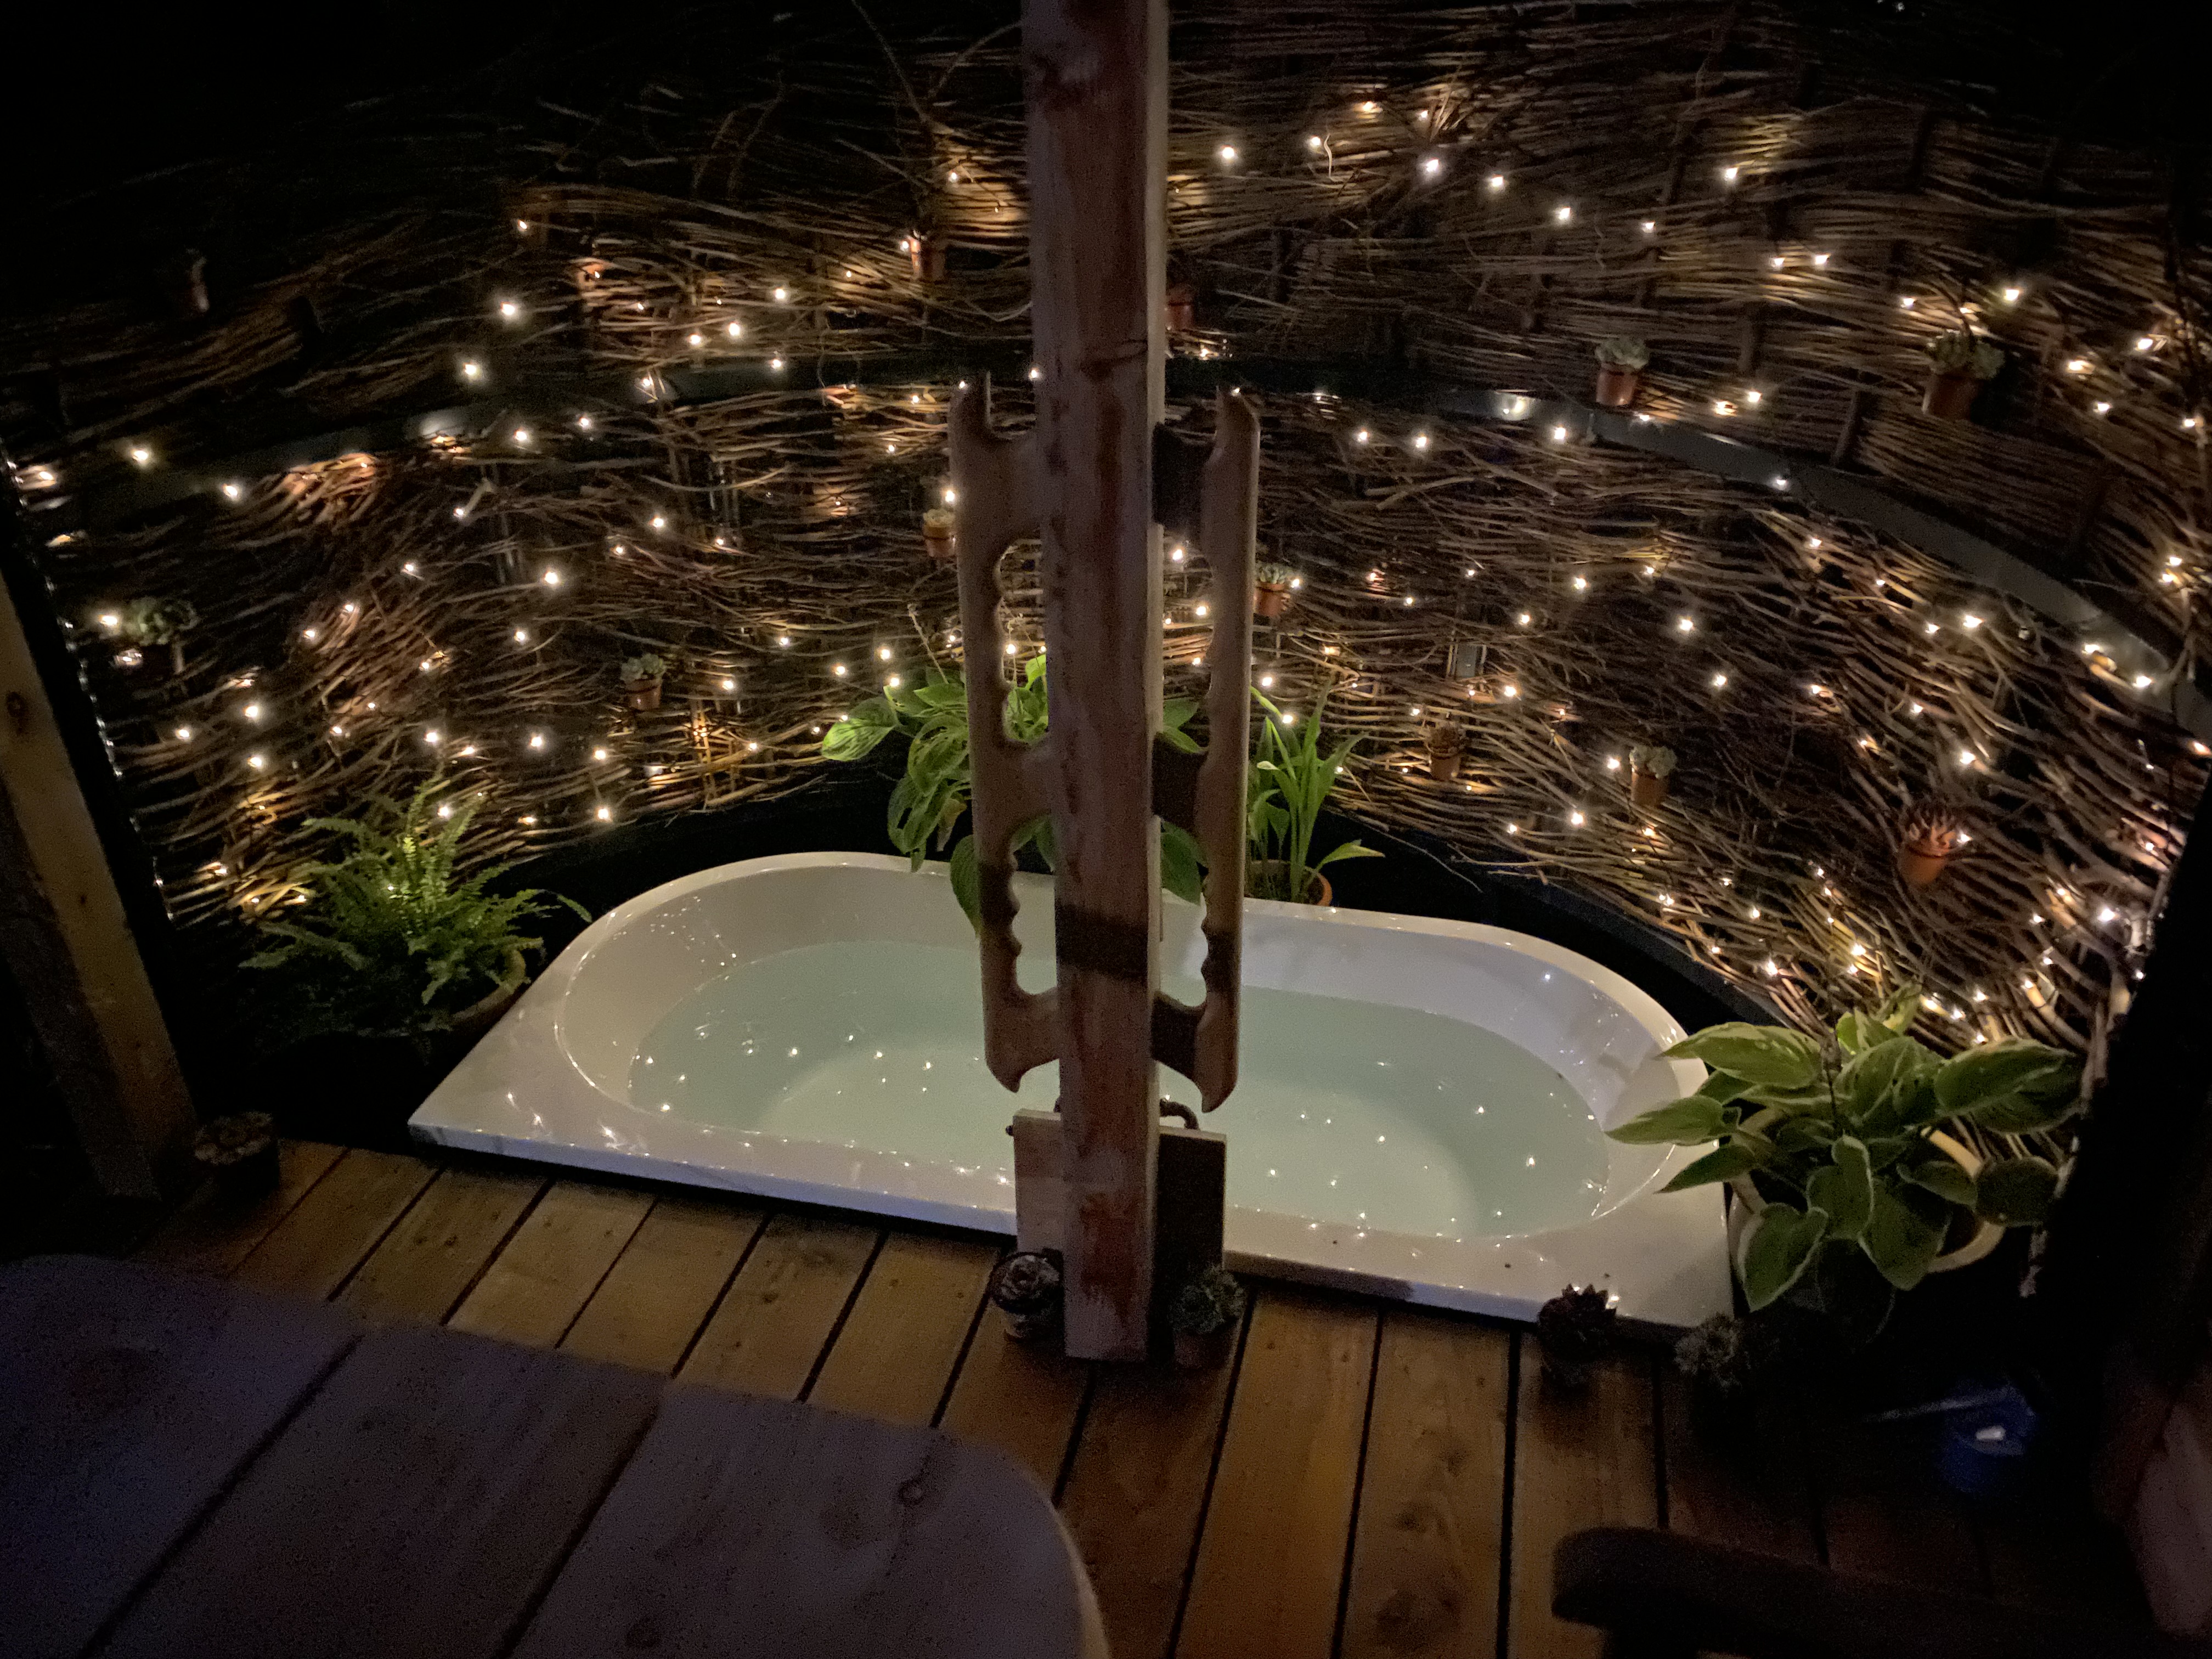 Night lights around the outdoor bath